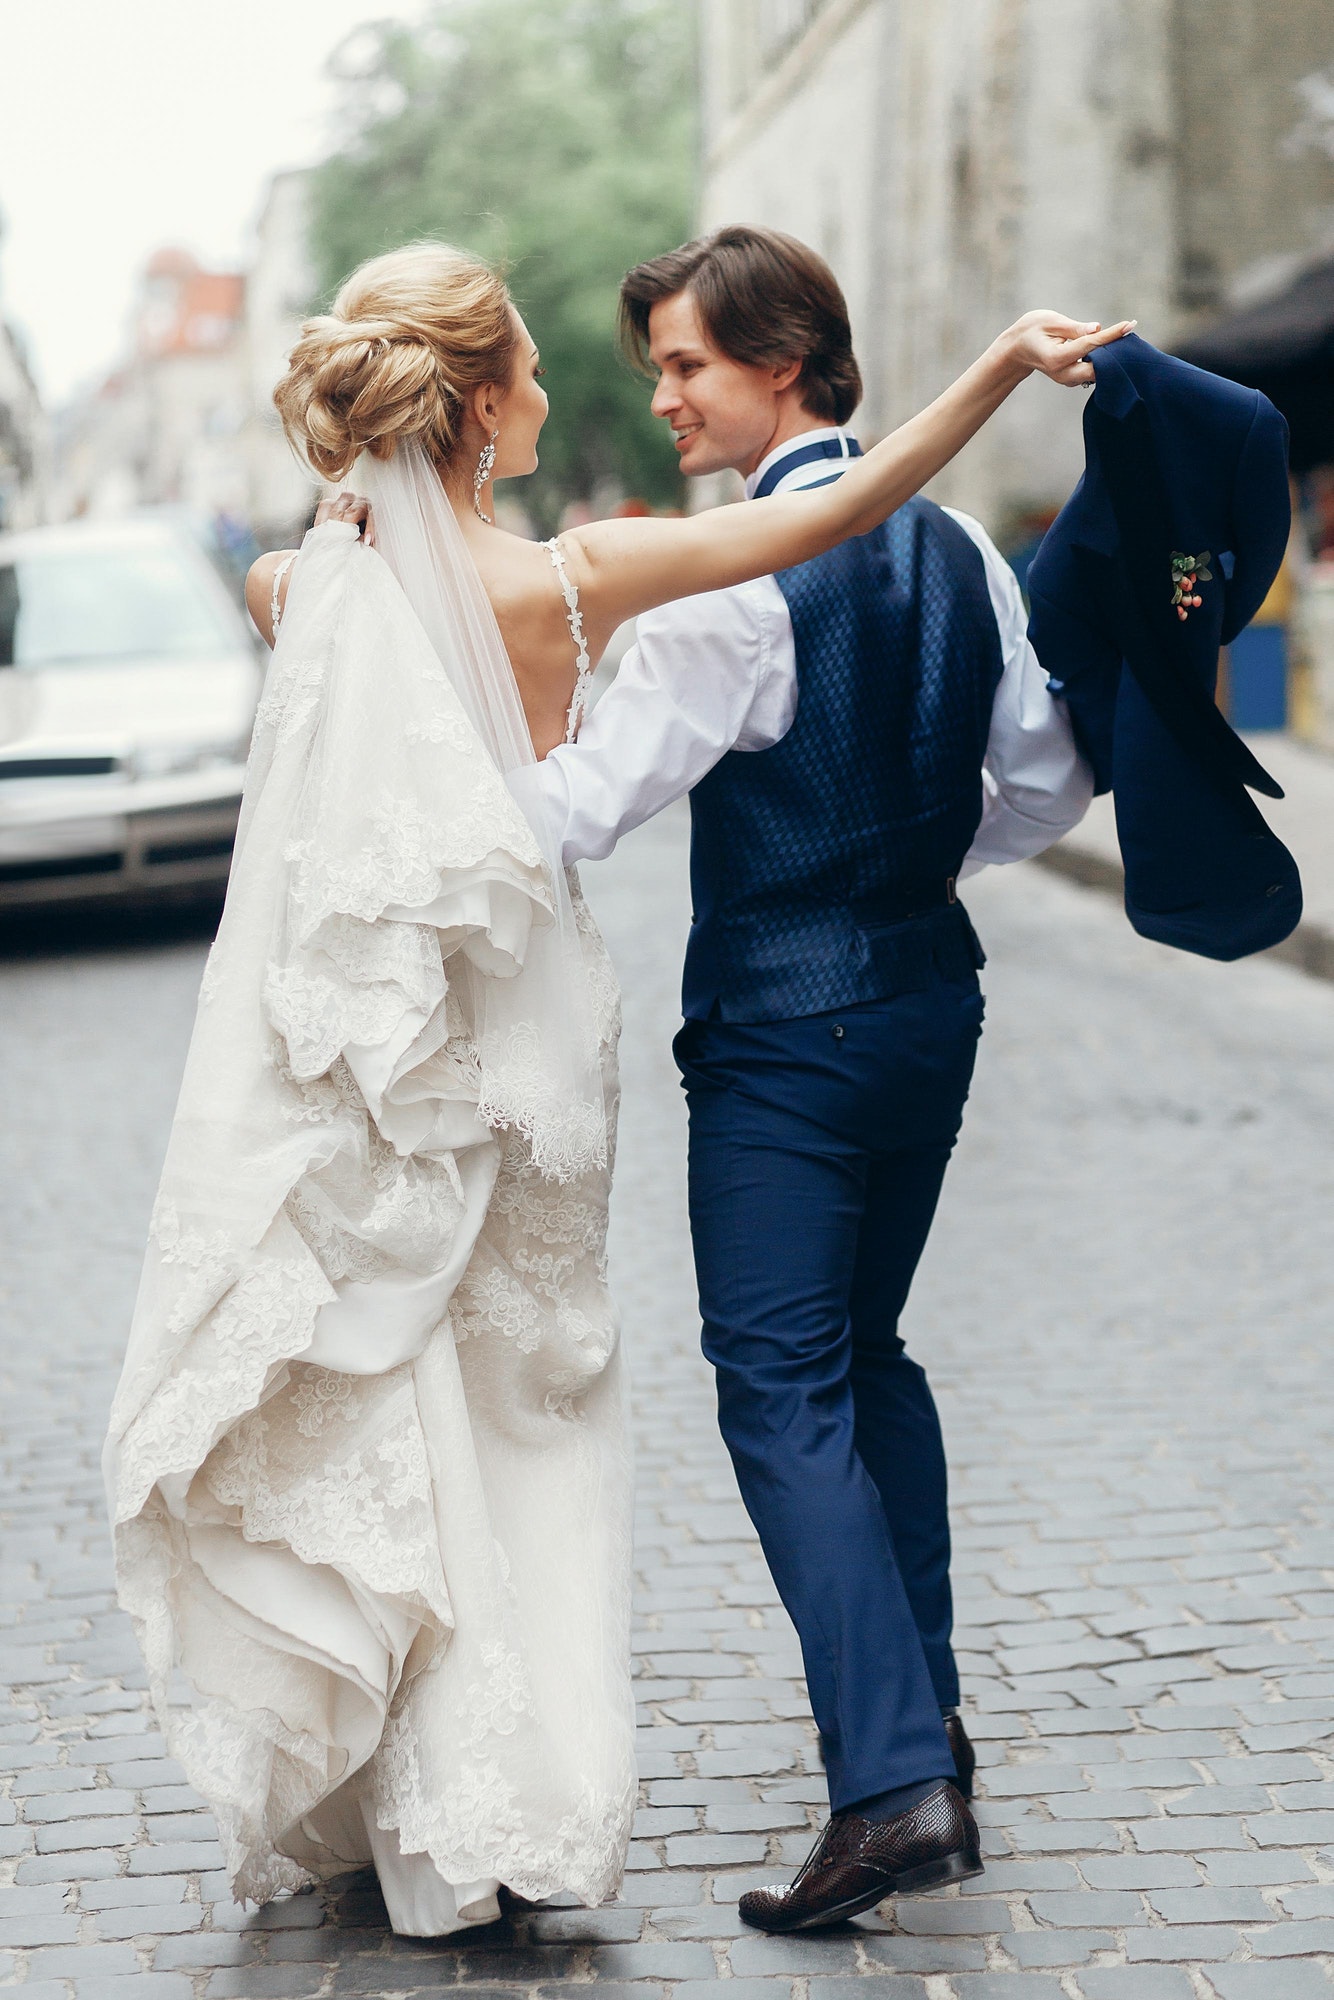 bride-and-groom-dancing-and-having-fun-in-city-street-.jpg